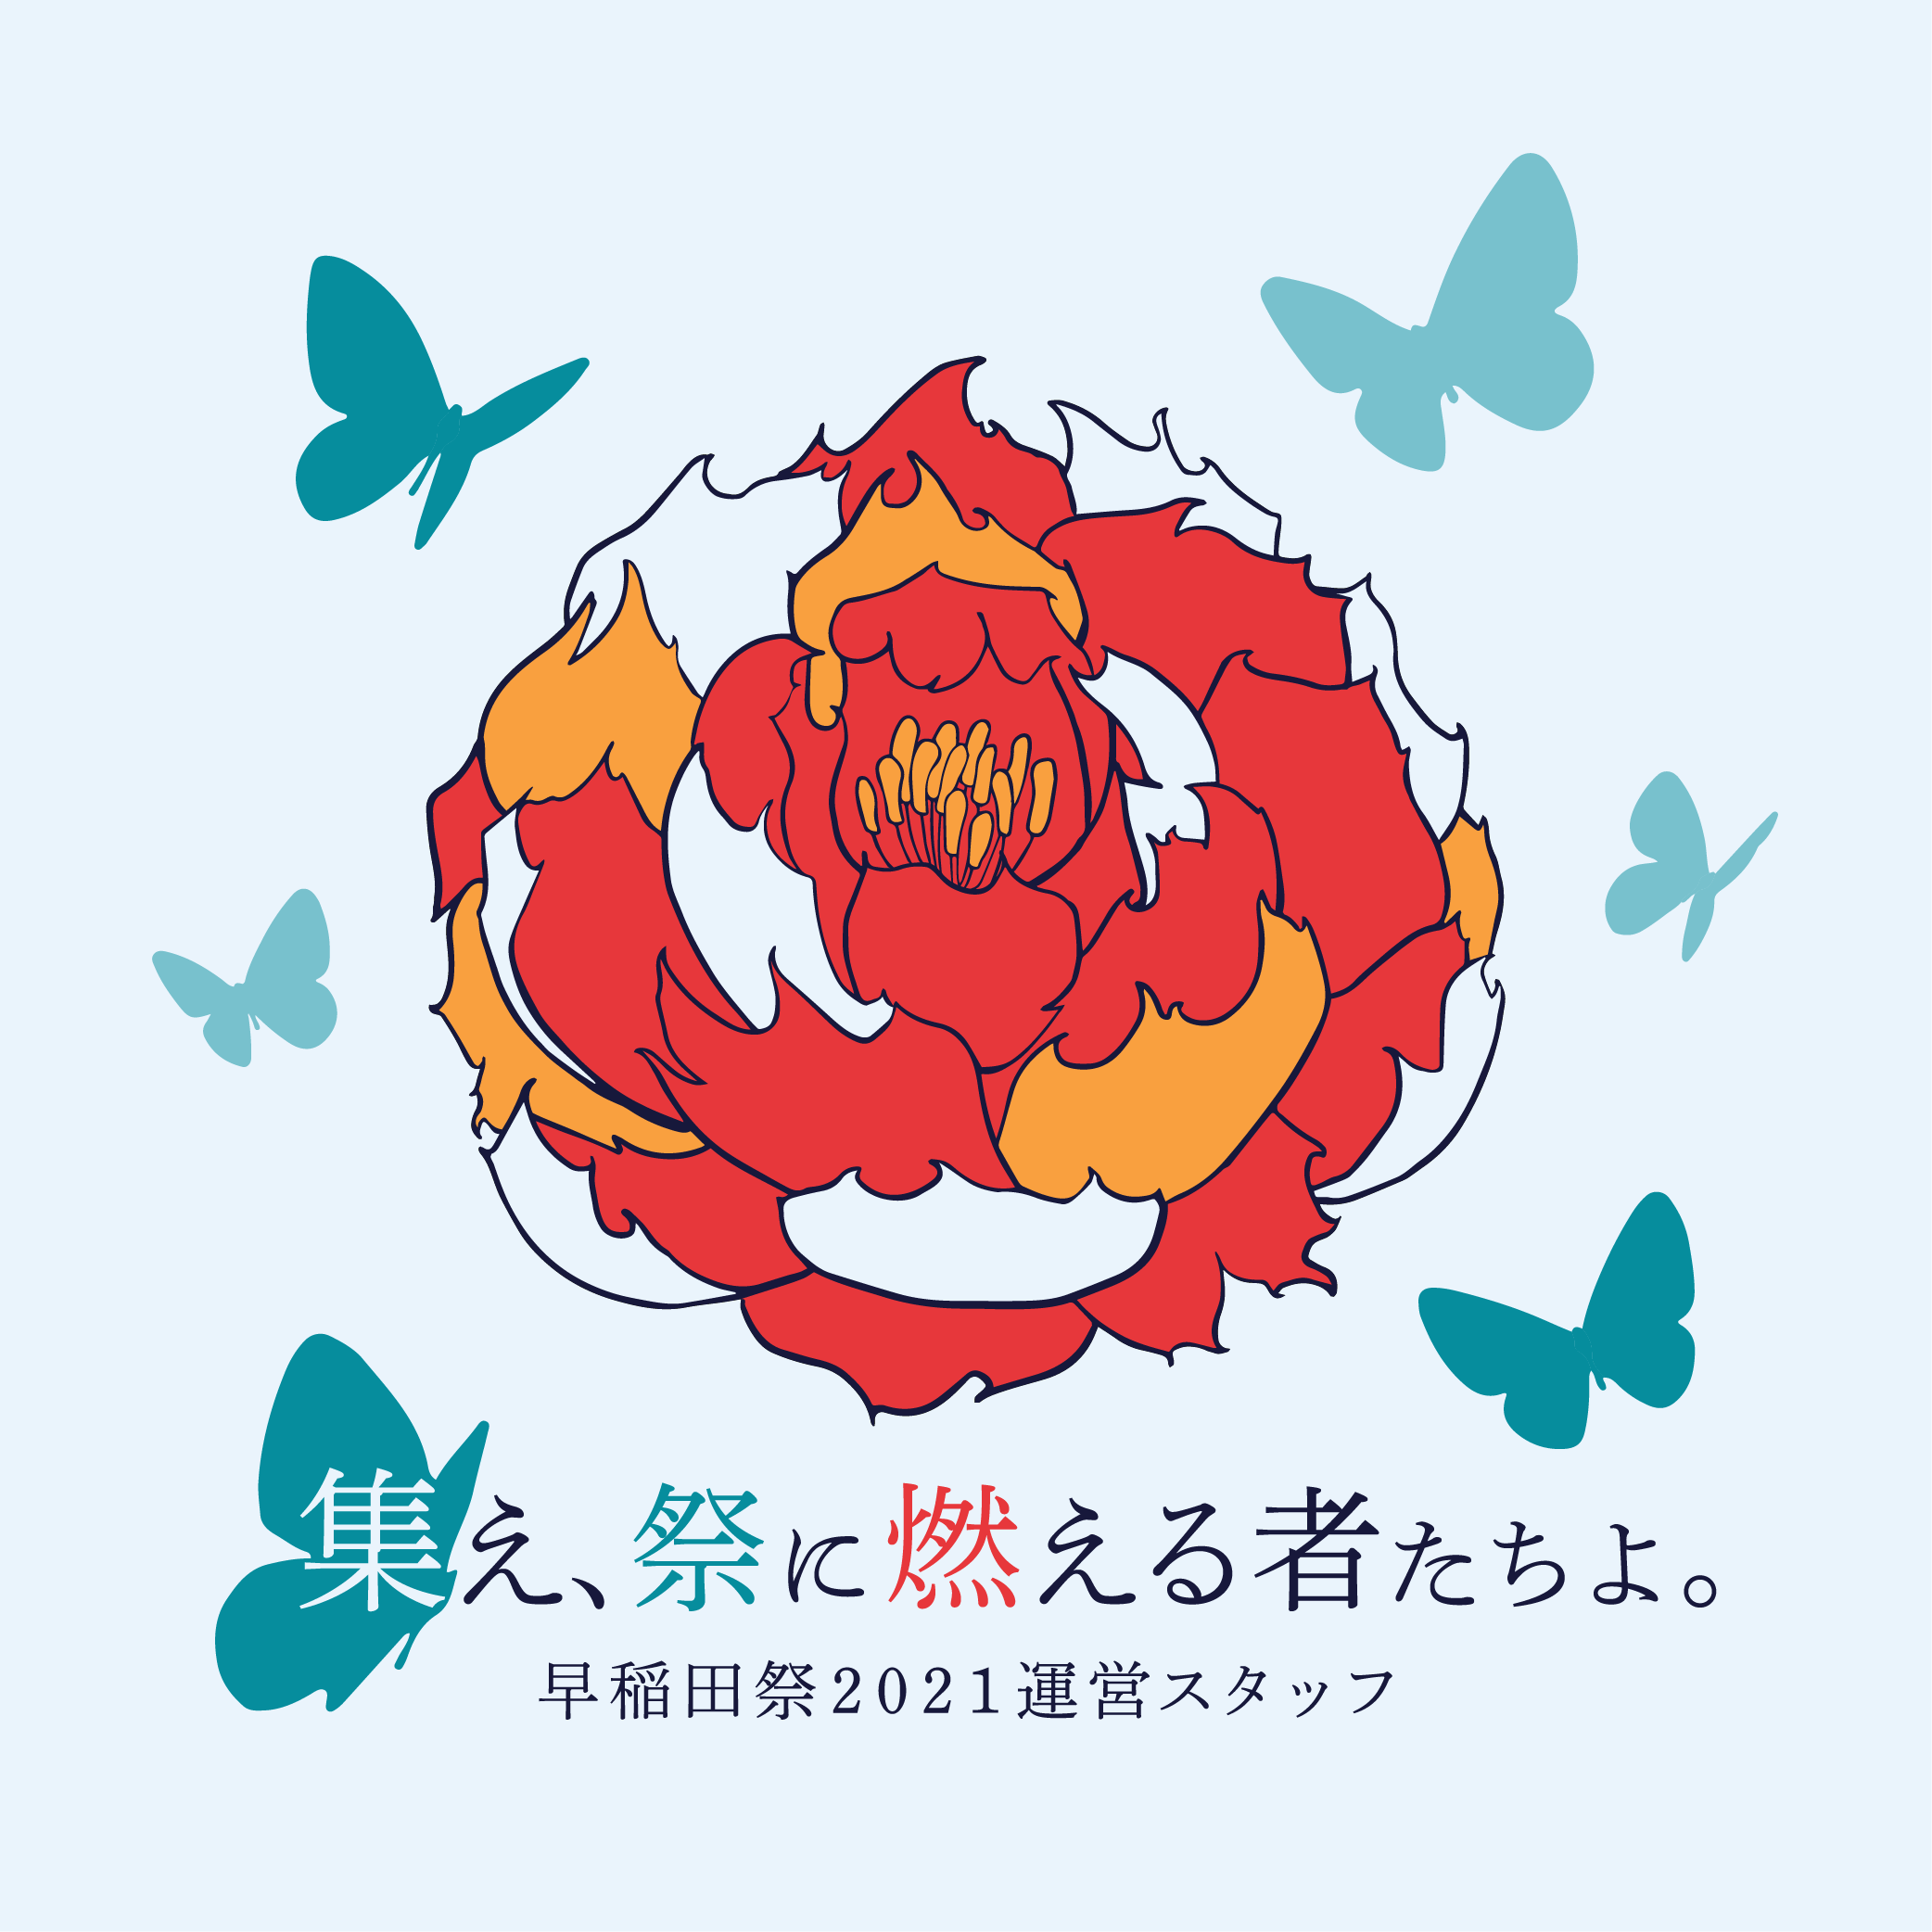 早稲田祭21運営スタッフ新歓公式サイト